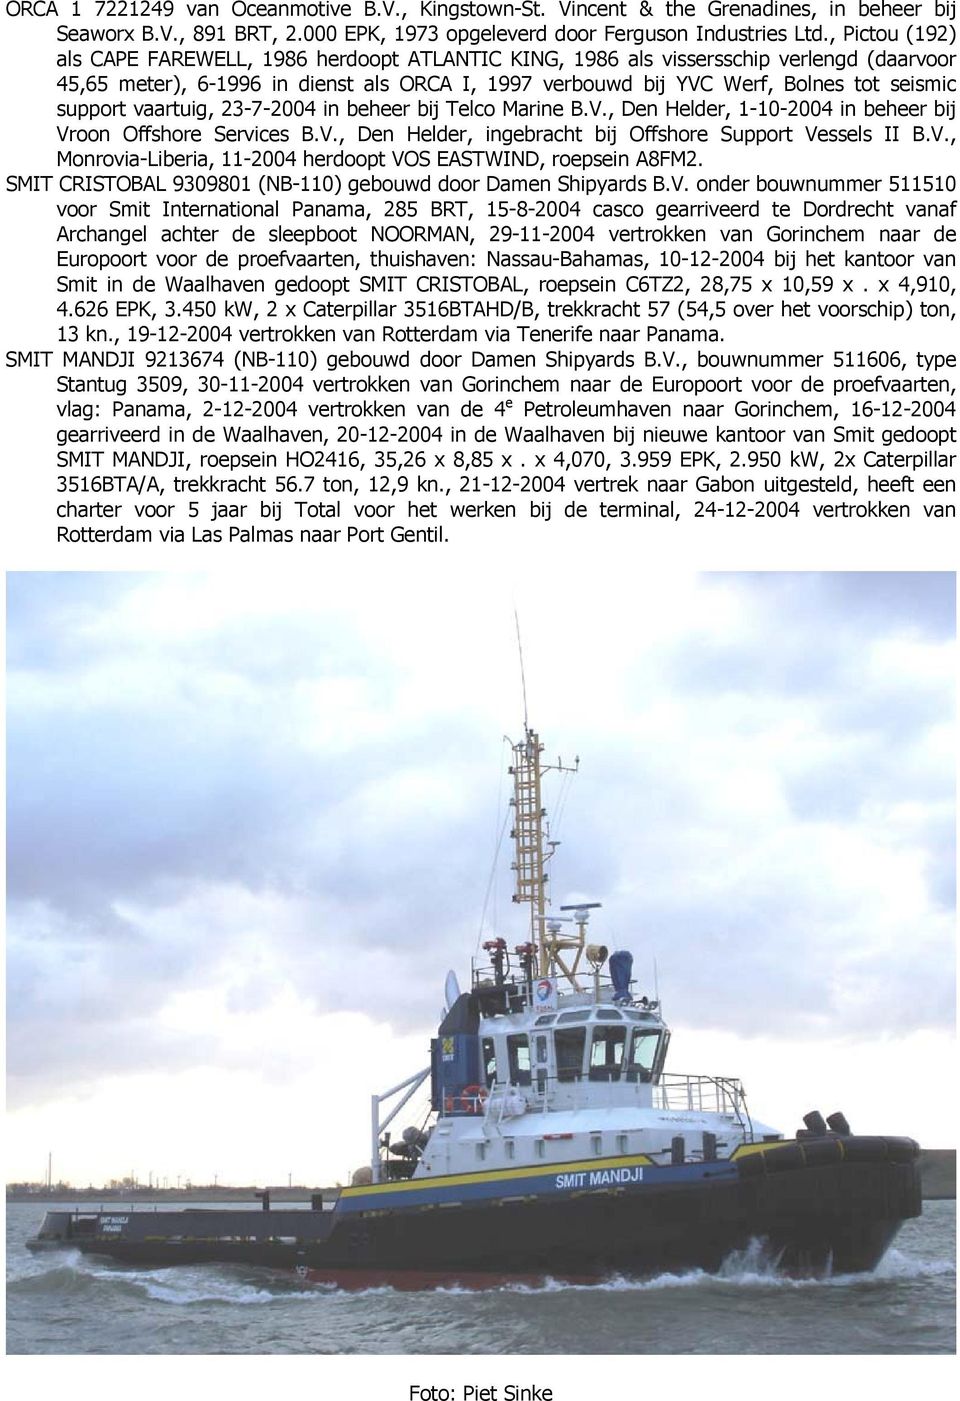 support vaartuig, 23-7-2004 in beheer bij Telco Marine B.V., Den Helder, 1-10-2004 in beheer bij Vroon Offshore Services B.V., Den Helder, ingebracht bij Offshore Support Vessels II B.V., Monrovia-Liberia, 11-2004 herdoopt VOS EASTWIND, roepsein A8FM2.